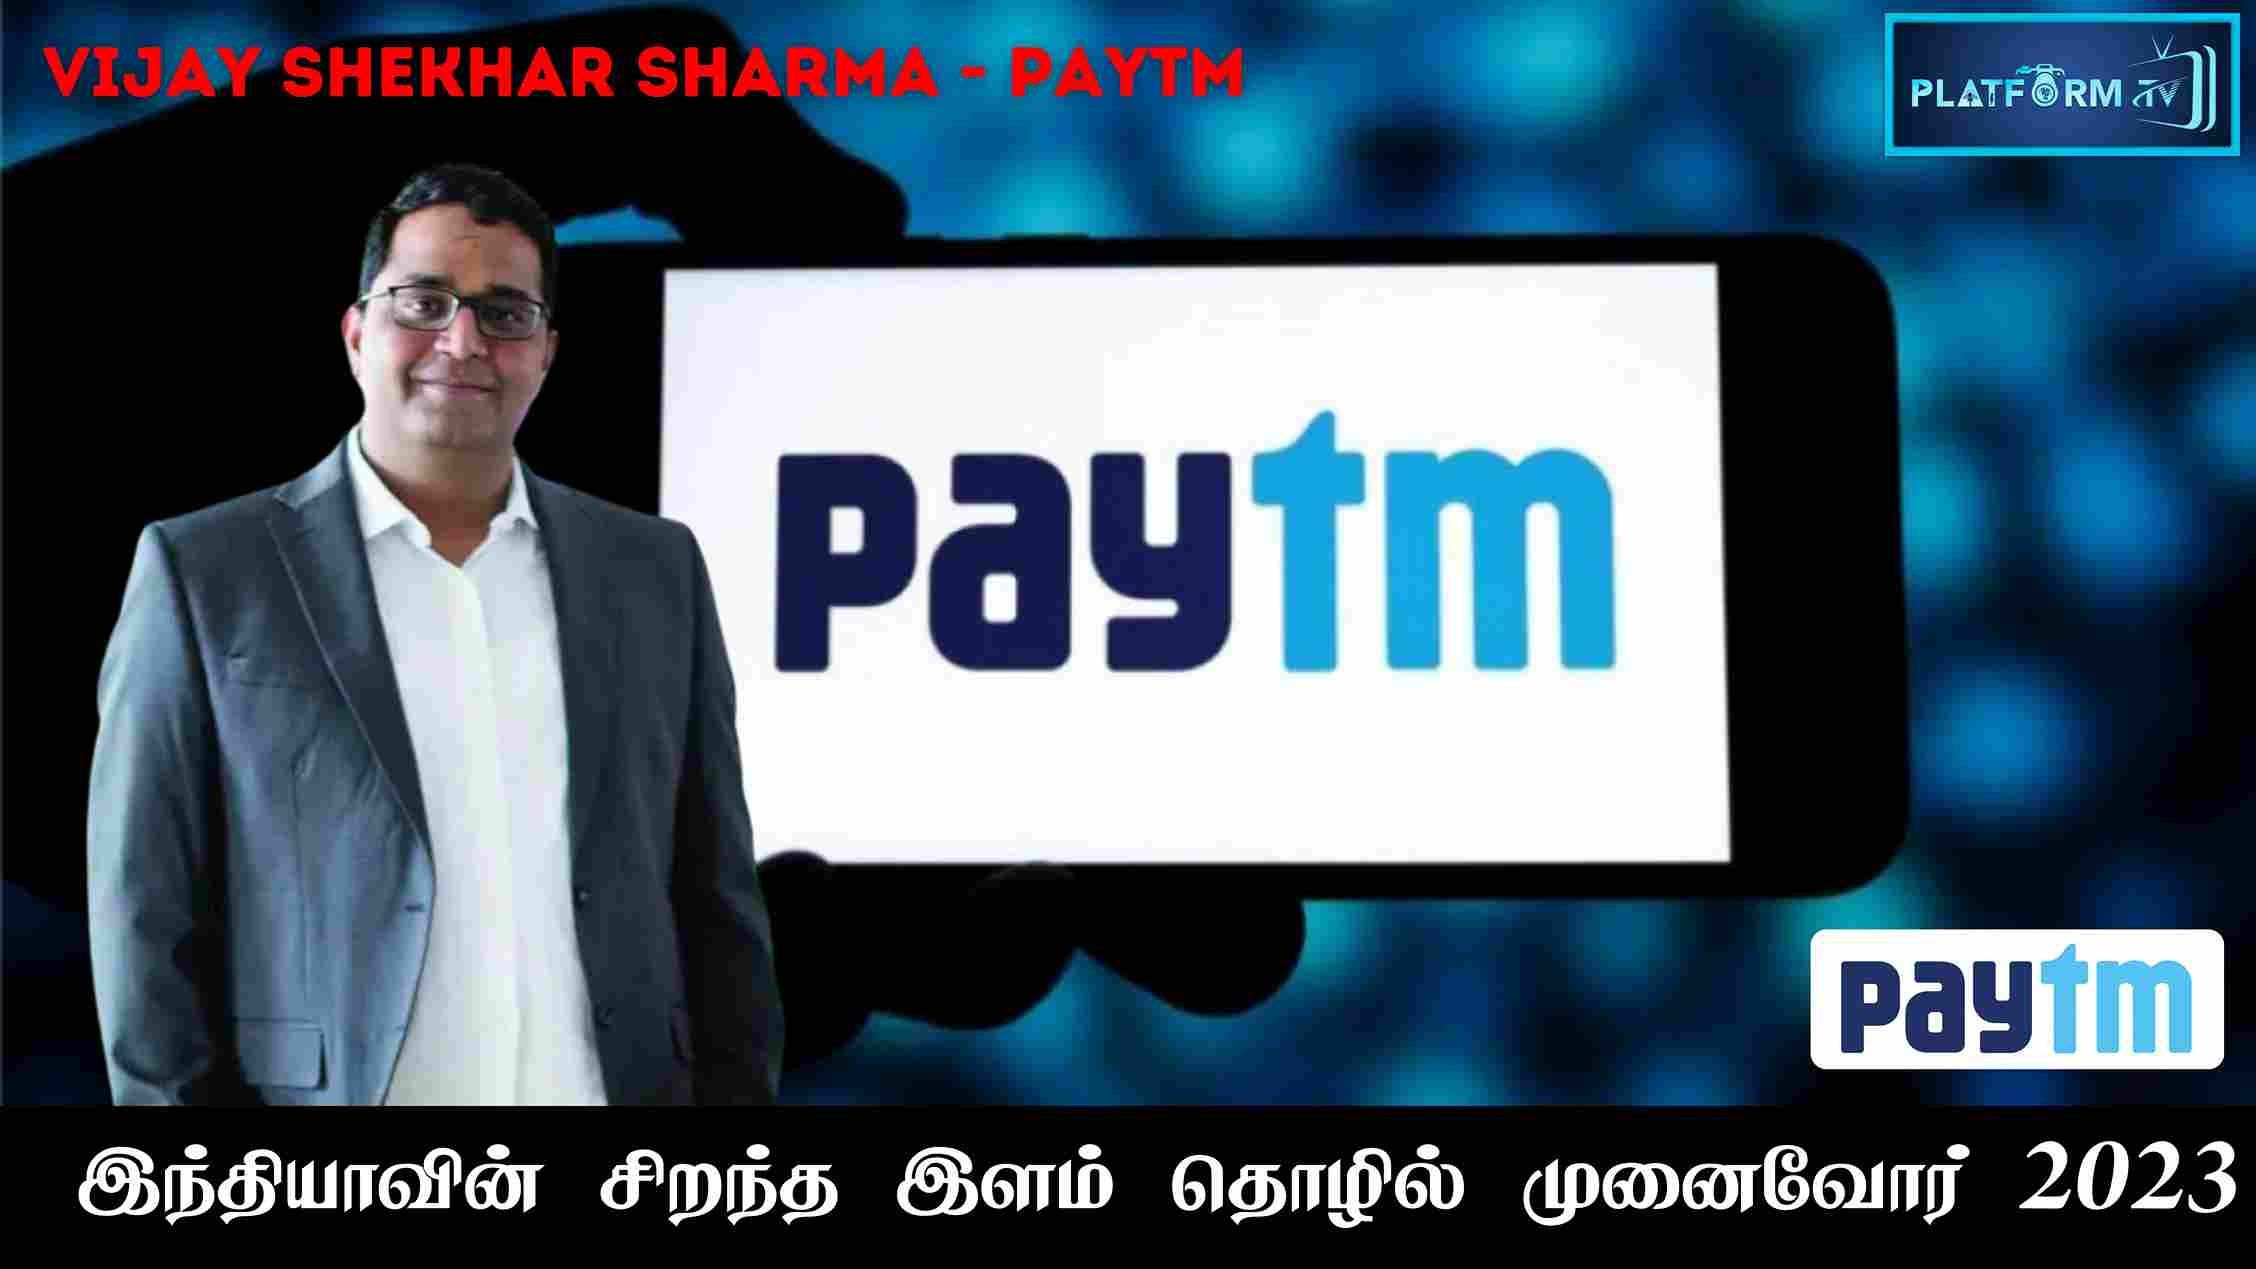 Paytm Founder Vijay Shekhar Sharma - Platform Tamil